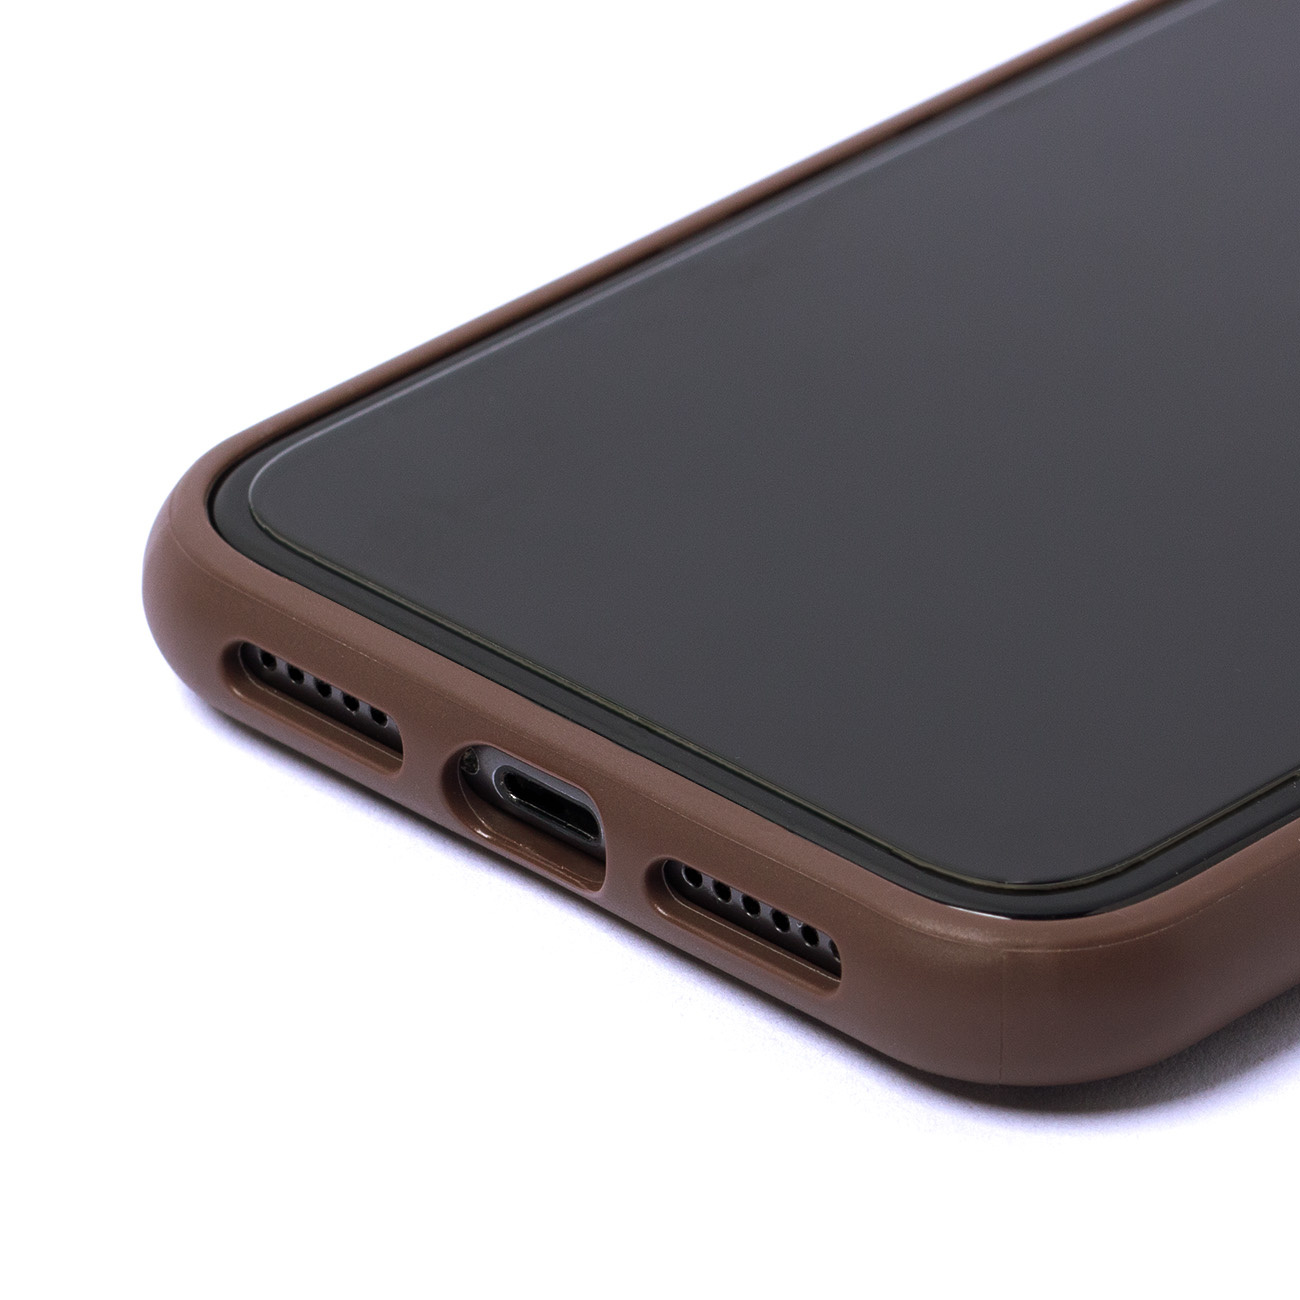 Aussparungen für Lautsprecher und Ladeanschluss an der Guess-Hülle für die iPhone 11 / XR 4G-Serie mit Big Metal Logo